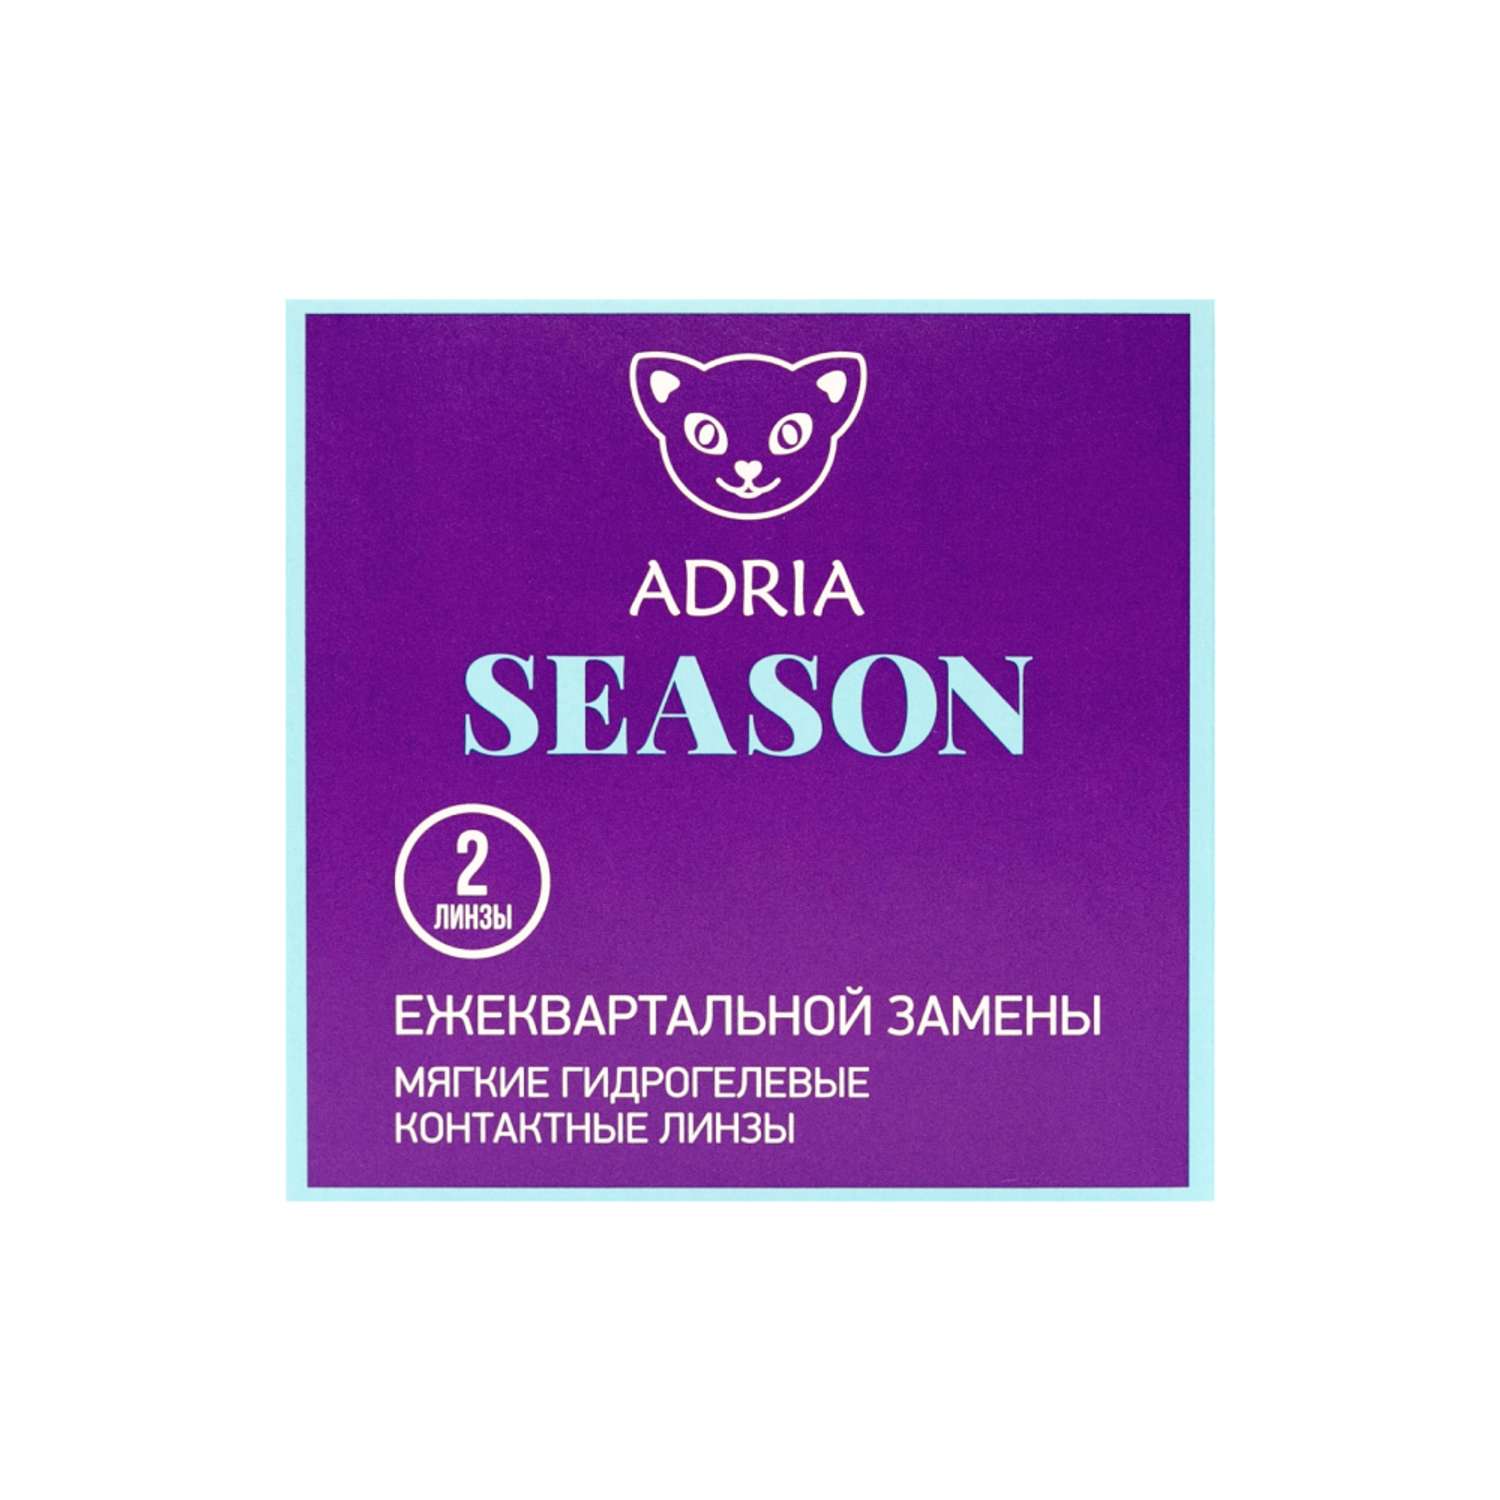 Контактные линзы ADRIA Season 2 линзы R 8.6 -4.00 - фото 6